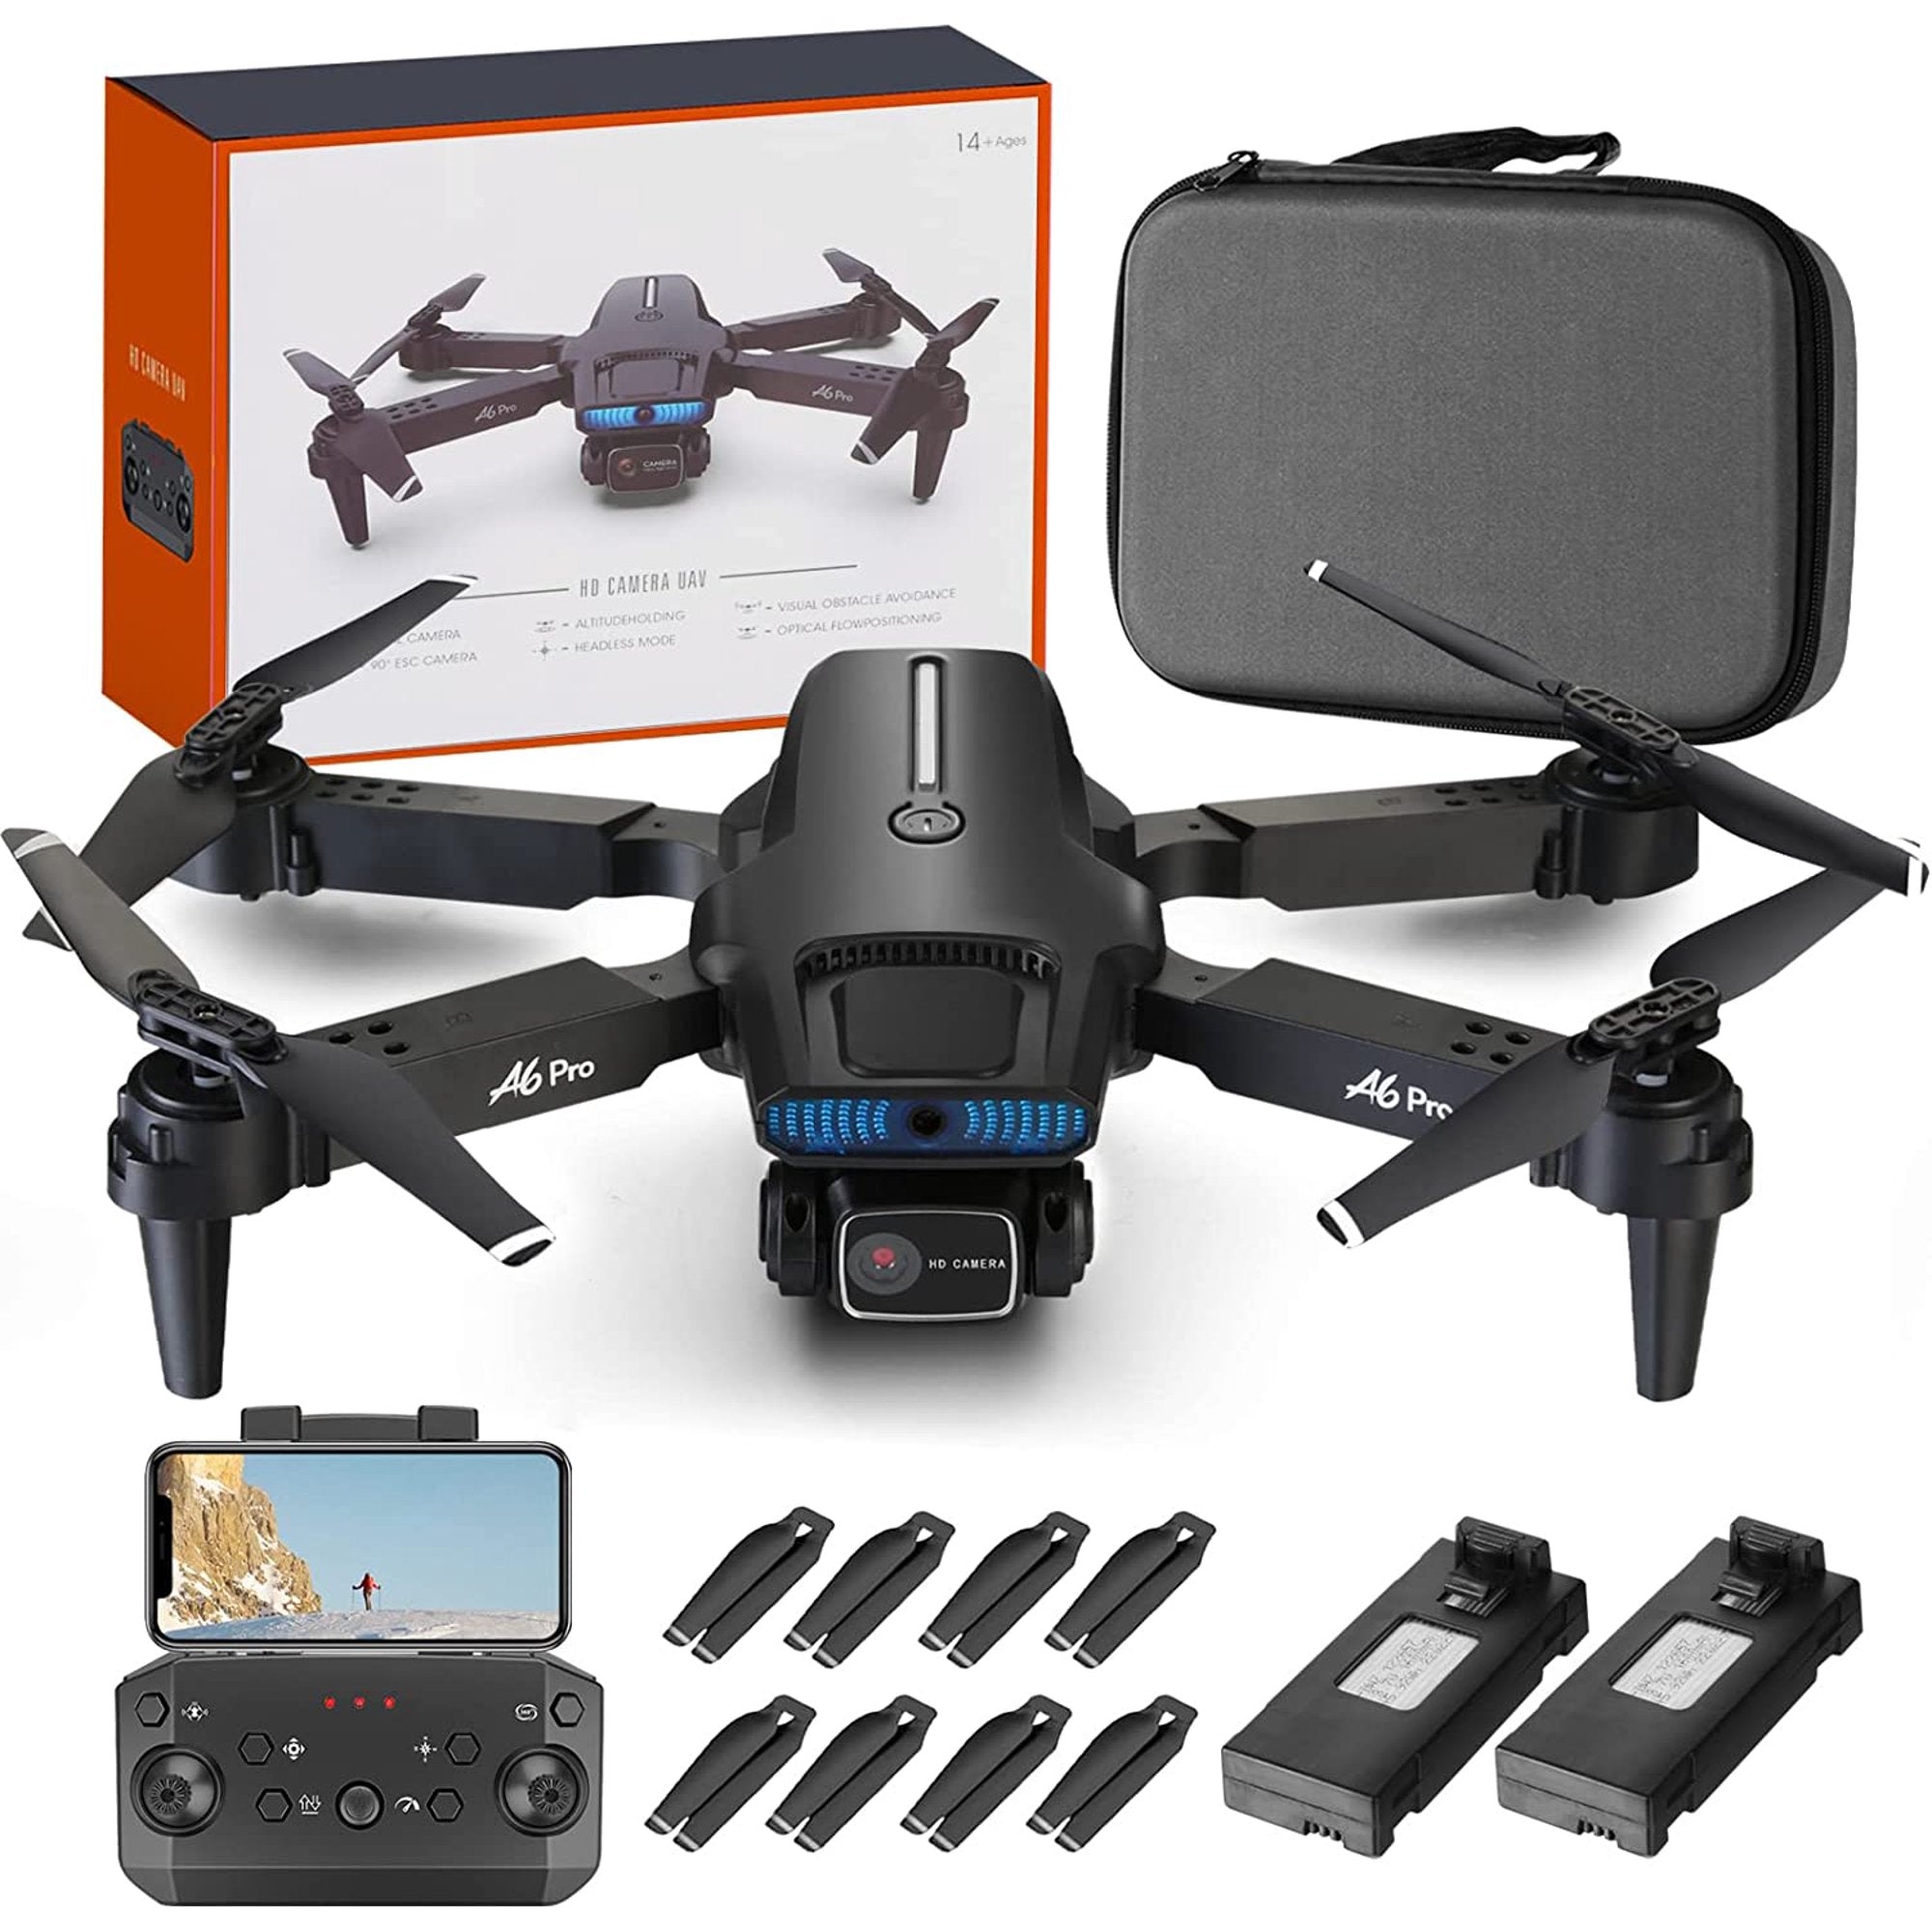 NMY A6 Pro GPS Drone - 2K HD Camera, WiFi FPV, 40mins Flight, Multiple Modes